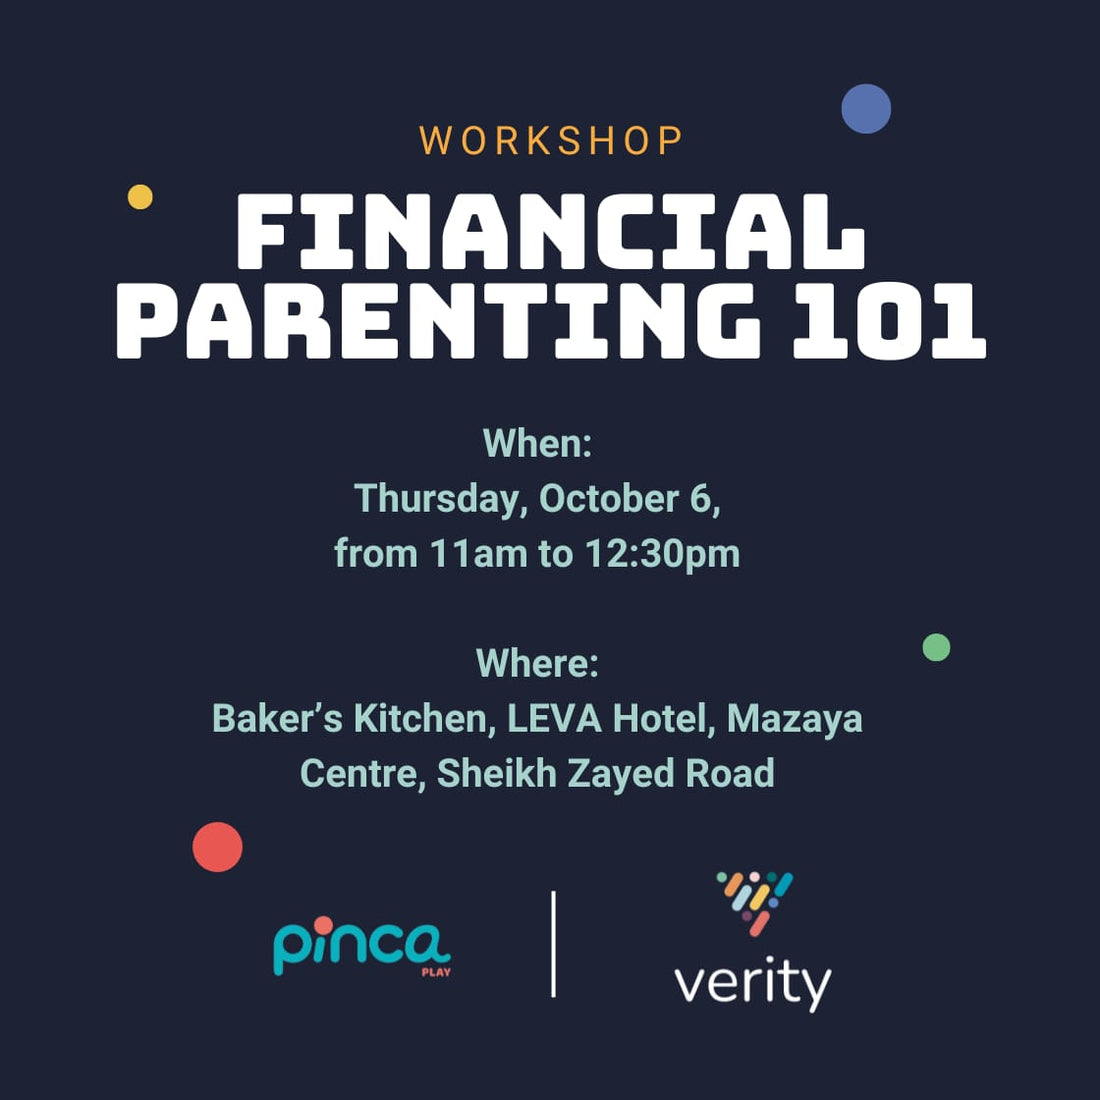 Financial Parenting 101 Workshop